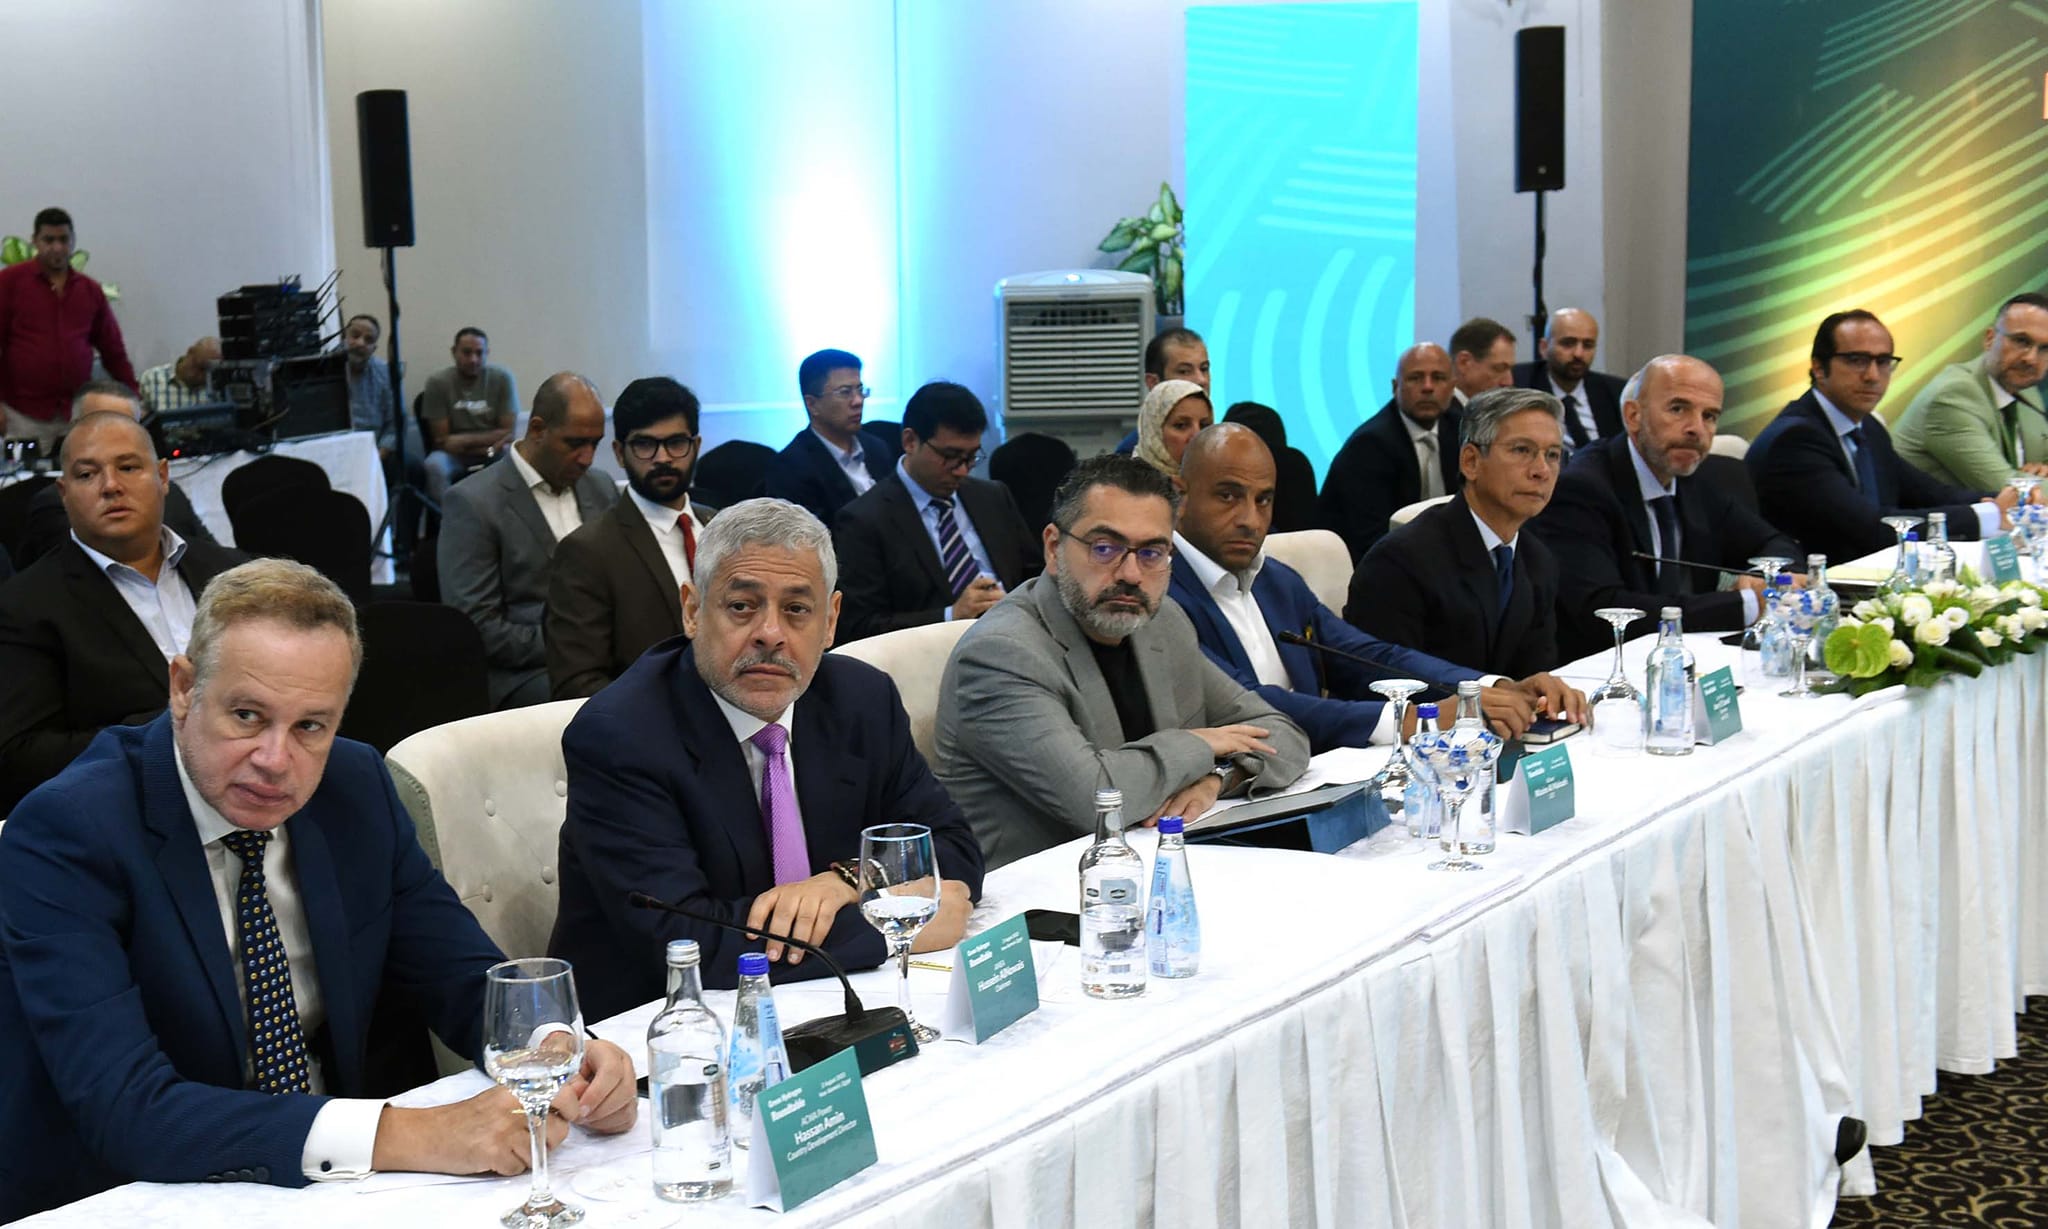 وزراء الكهرباء والبترول والتخطيط يستعرضون إمكانات وخطط إنتاج الطاقة المتجددة والهيدروجين الأخضر في مصر